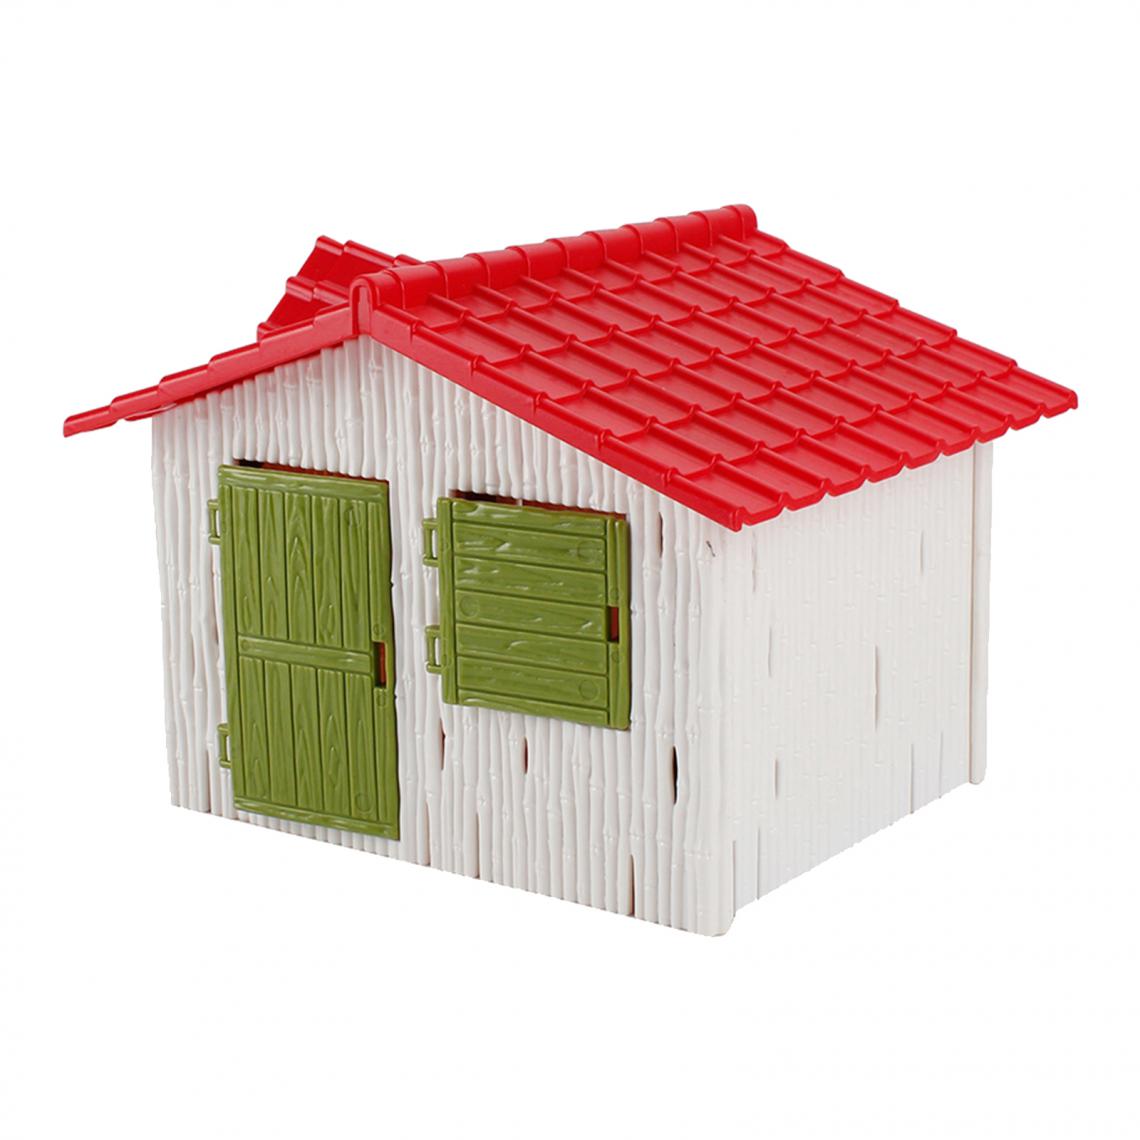 marque generique - Fairy Cottage Micro Landscape Yard Building Modèle Disposition Diorama Style B - Petite déco d'exterieur